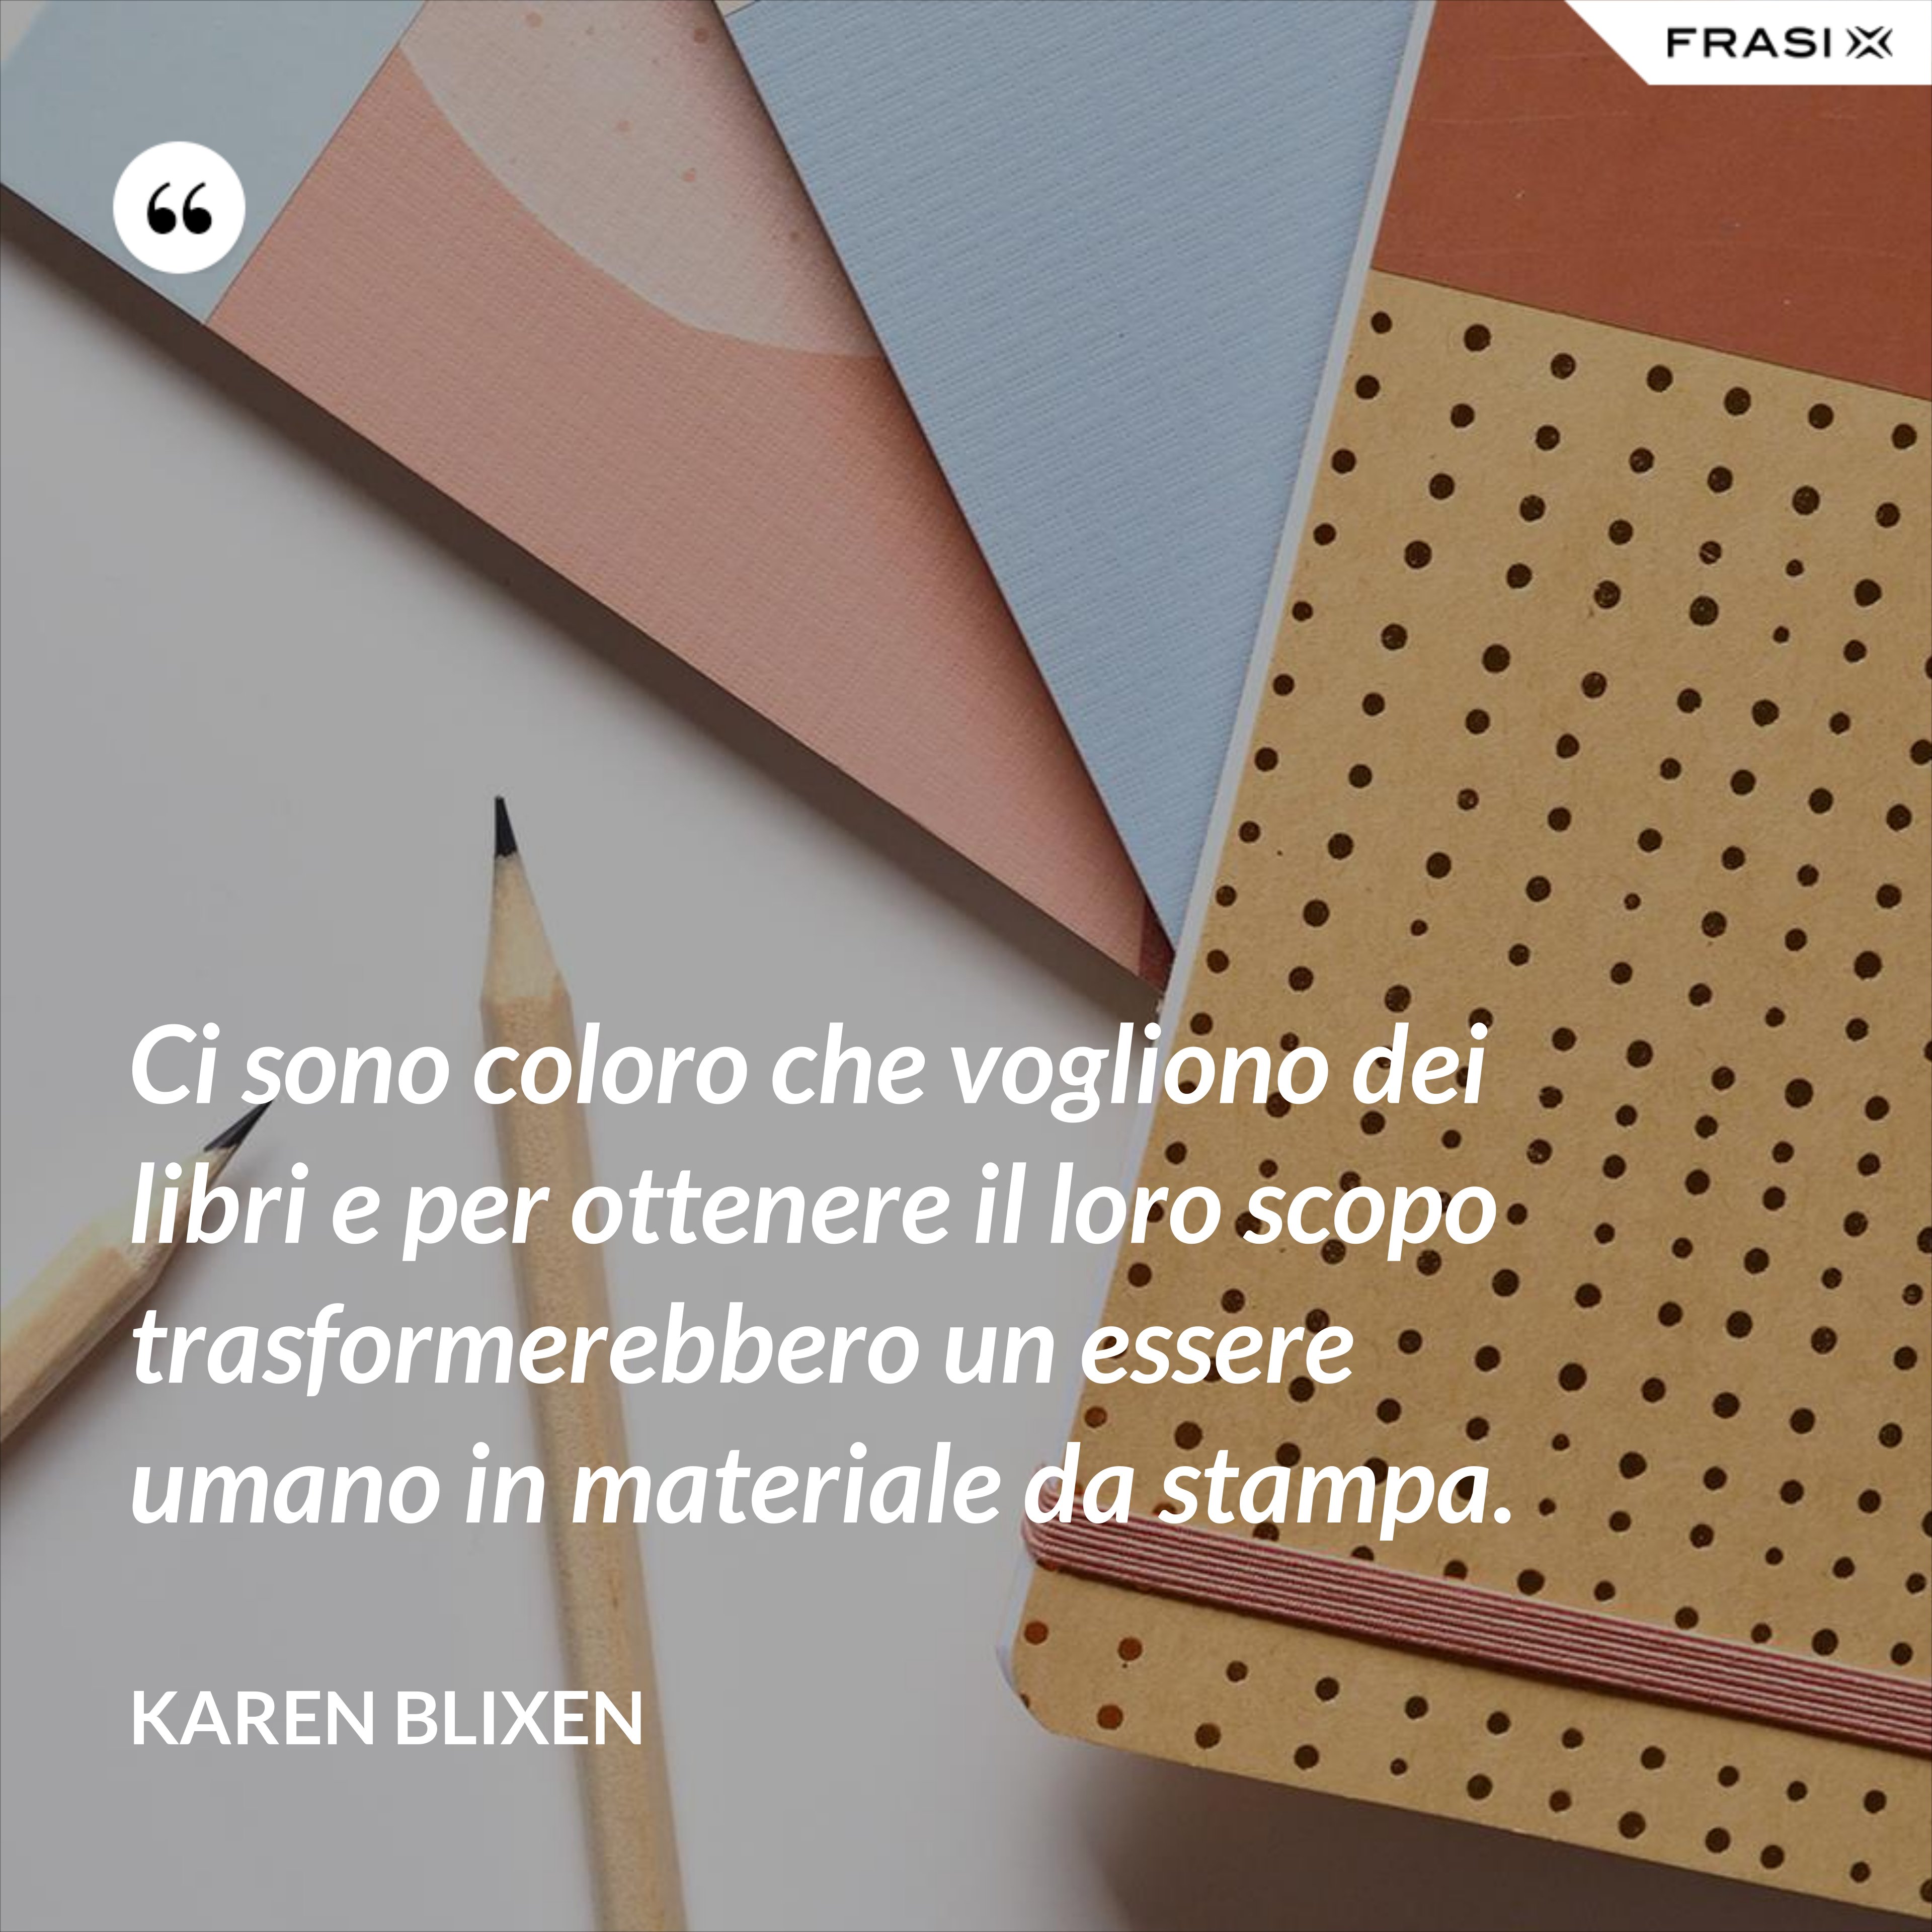 Ci sono coloro che vogliono dei libri e per ottenere il loro scopo trasformerebbero un essere umano in materiale da stampa. - Karen Blixen